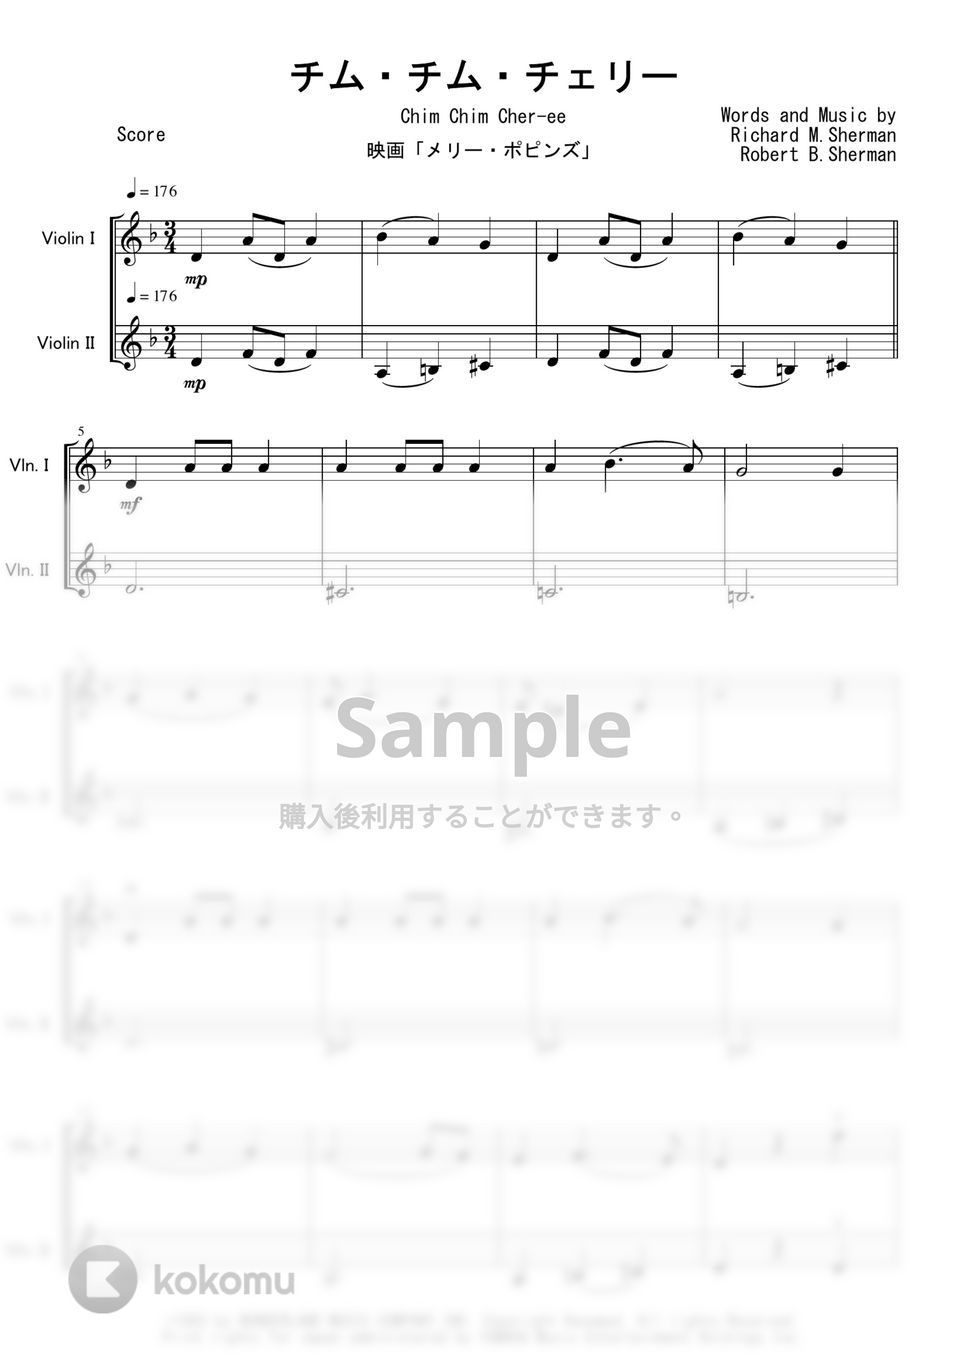 映画「メリー・ポピンズ」OST - チム・チム・チェリー (ヴァイオリン二重奏) by Peony